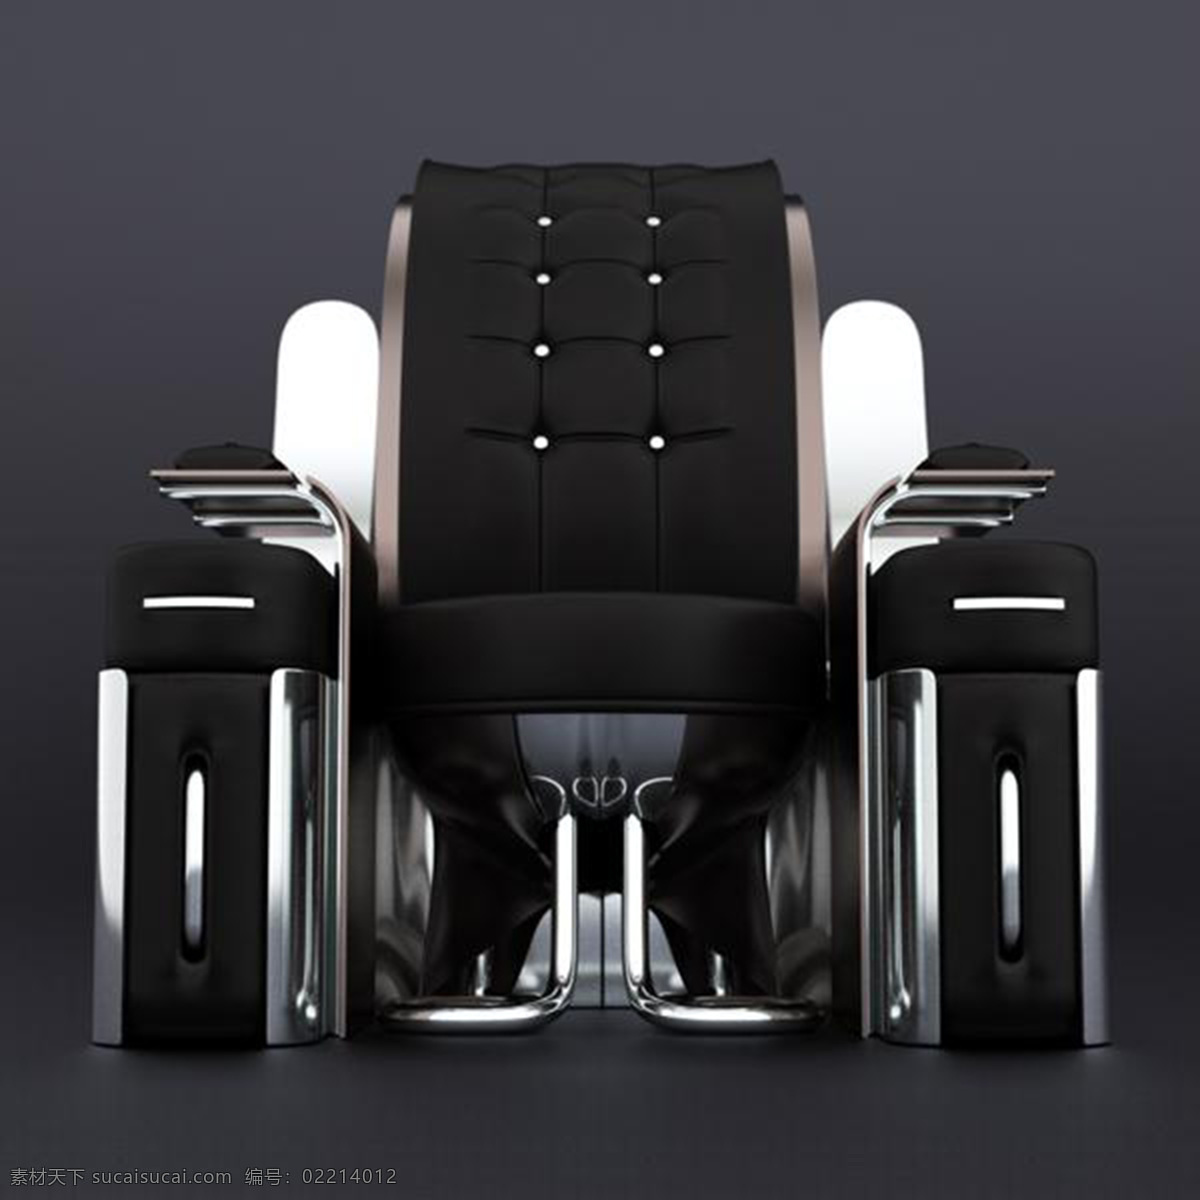 高端 大气 上档次 豪华 椅子 产品设计 创意 凳子 个性 工业设计 家居 生活 摇椅